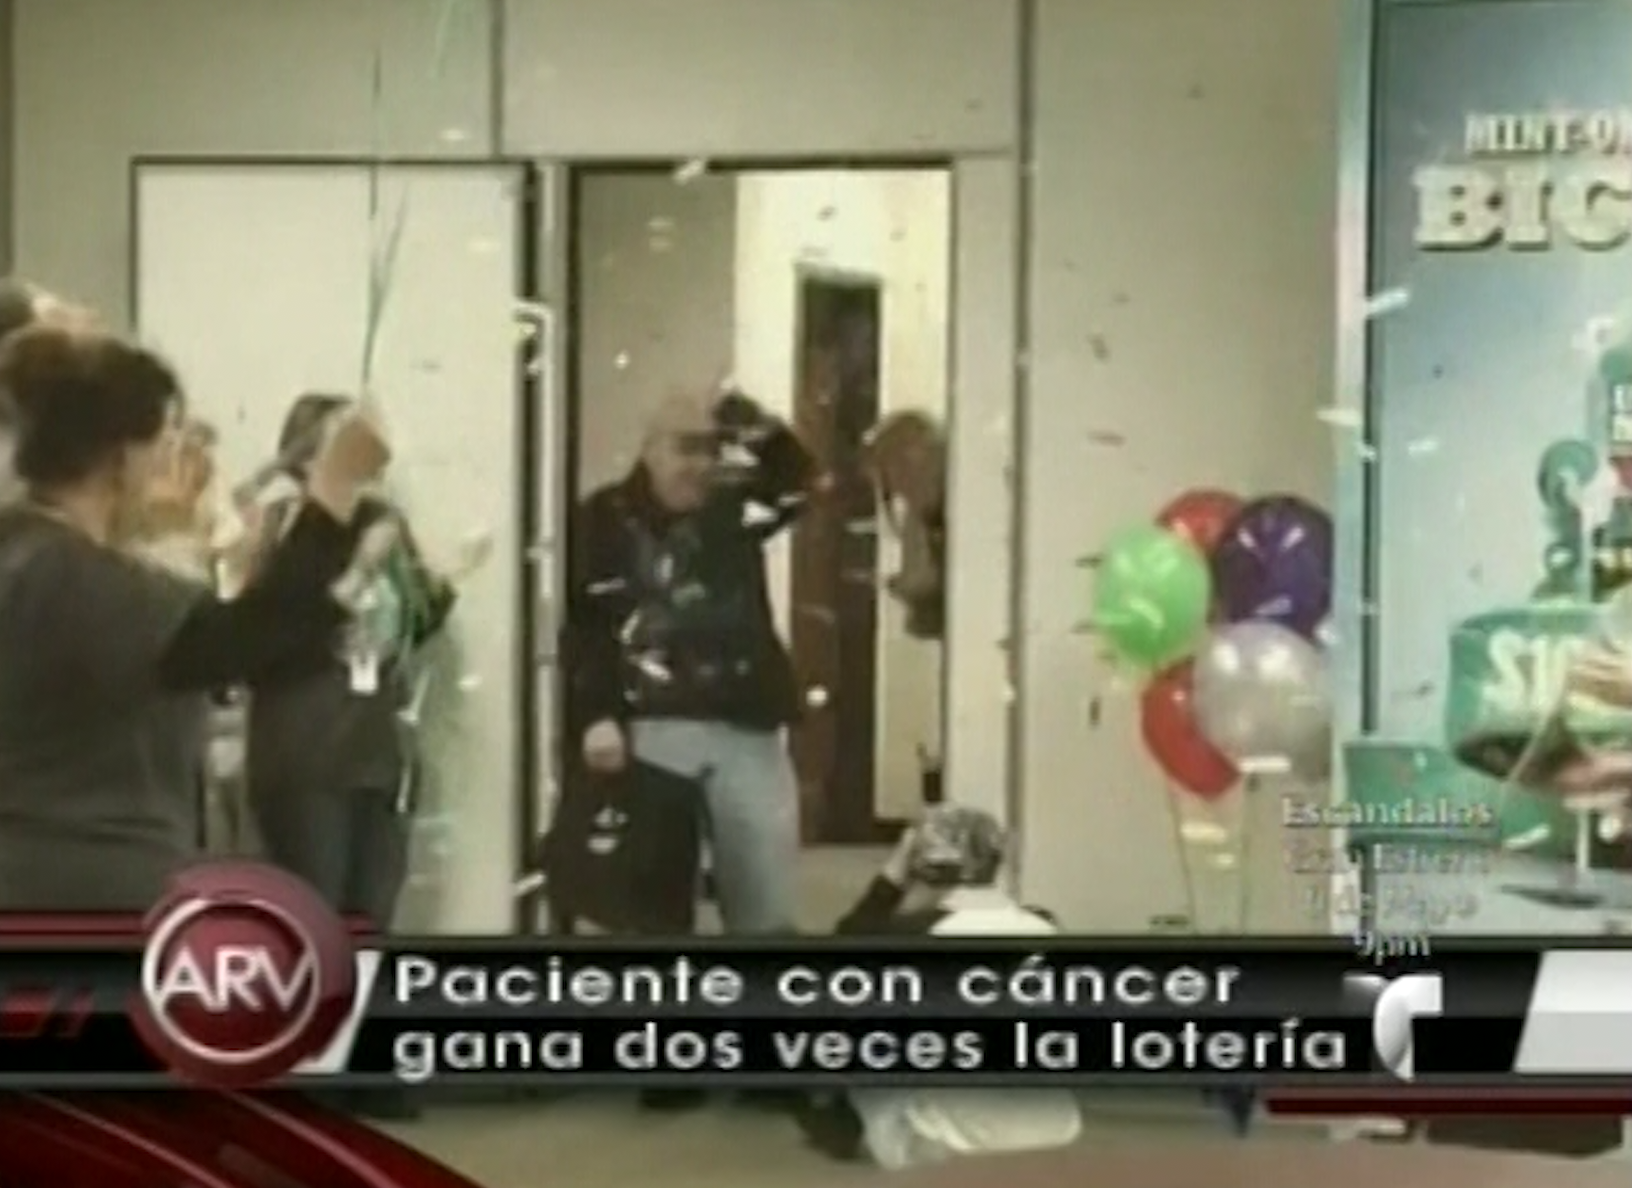 Paciente Con Cancer De Senos Esta De Suerte Y Le Pega 2 Veces A La Loteria.